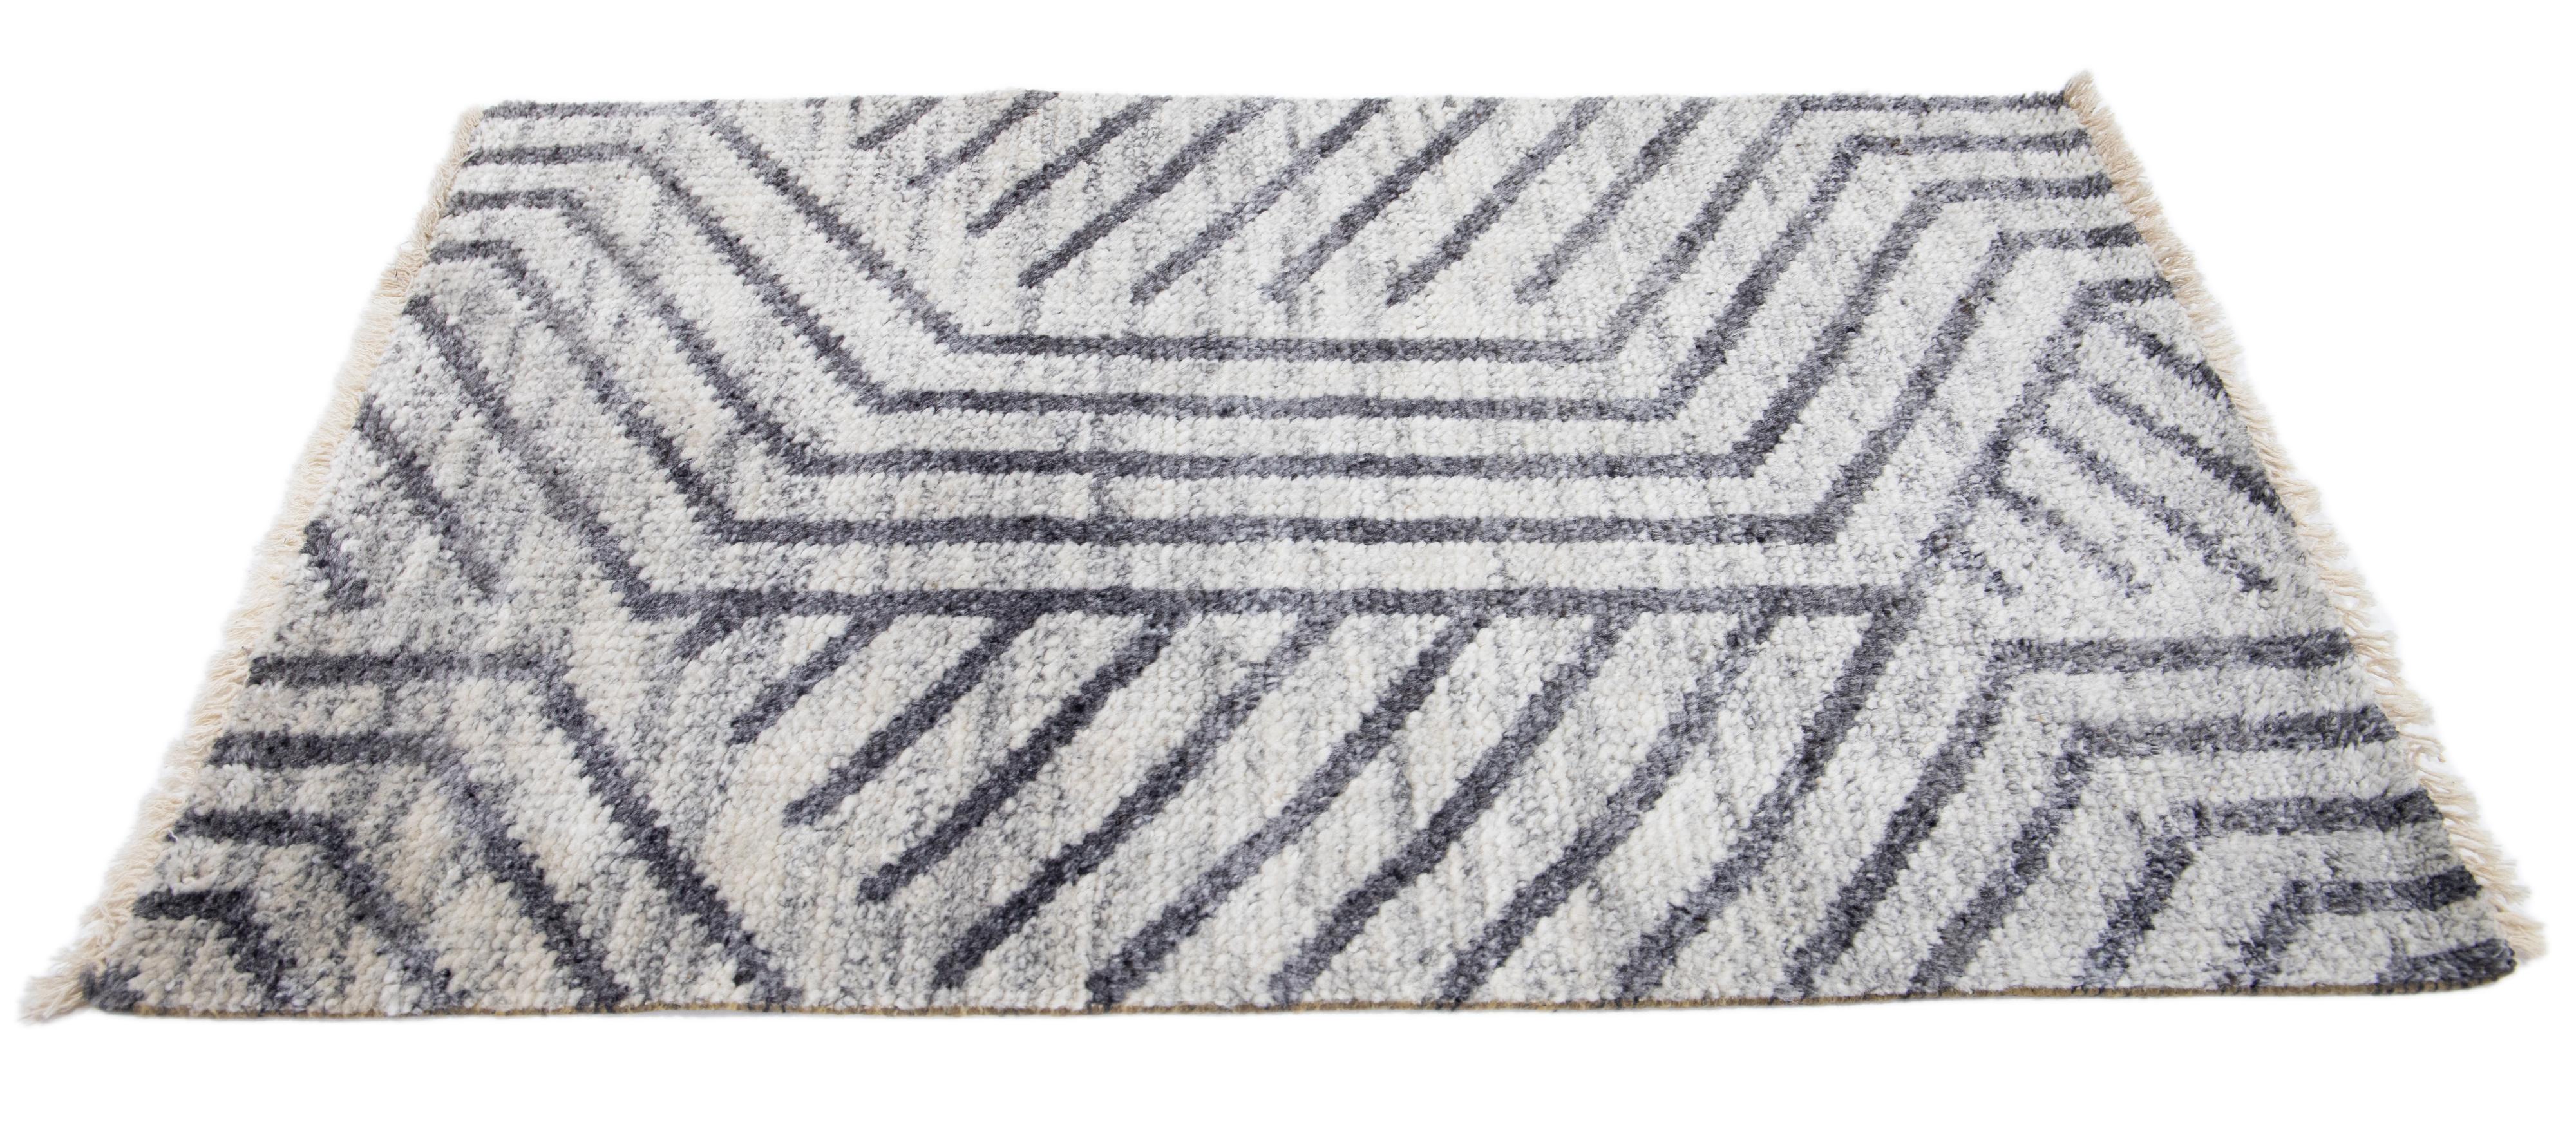 Apadana's Moderner Teppich nach Maß. Kundenspezifische Größen und Farben auf Bestellung. 

Material: 80% Wolle & 20% Baumwolle
Techniken: Handgeknüpft
Stil: Modern-geometrisch
Vorlaufzeit: Ca. 15-16 Wochen verfügbar 
Farben: Wie abgebildet, andere